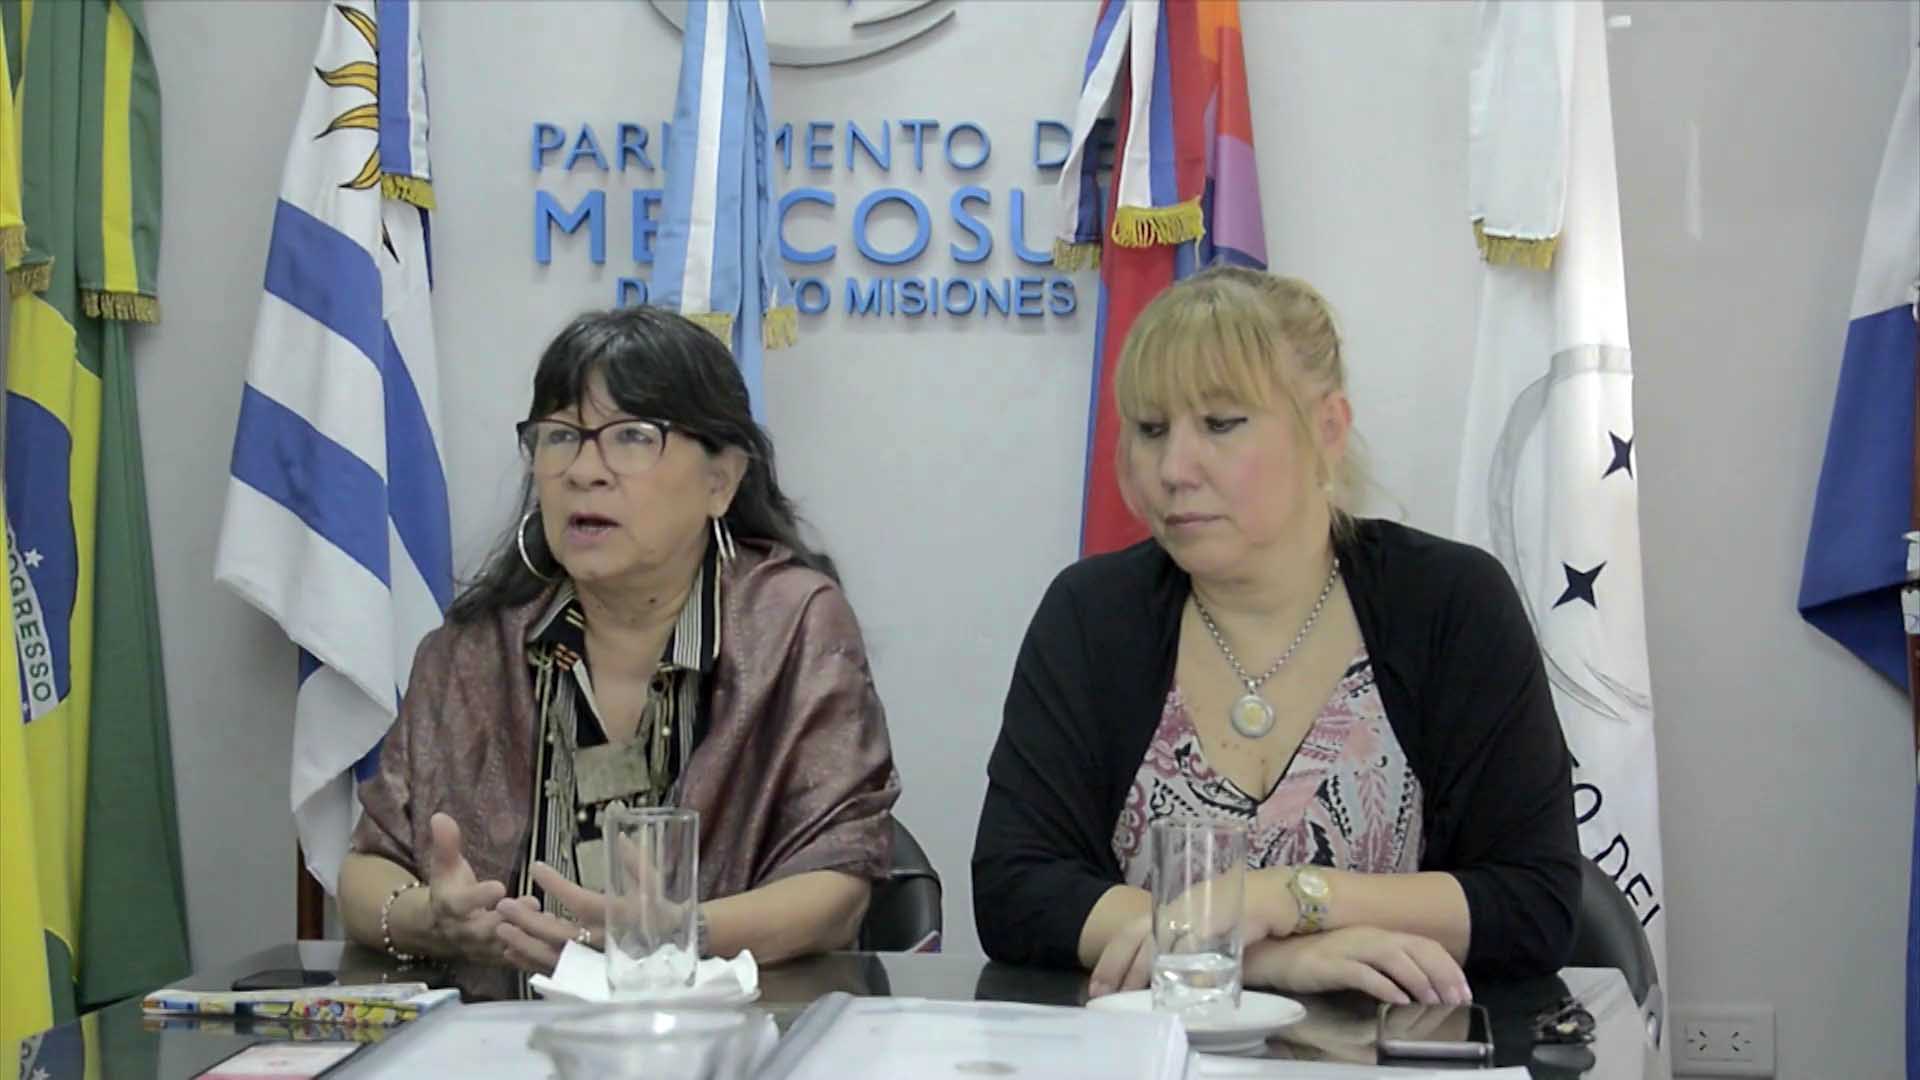 Representantes misioneras informaron sobre sus acciones en el parlamento del MERCOSUR